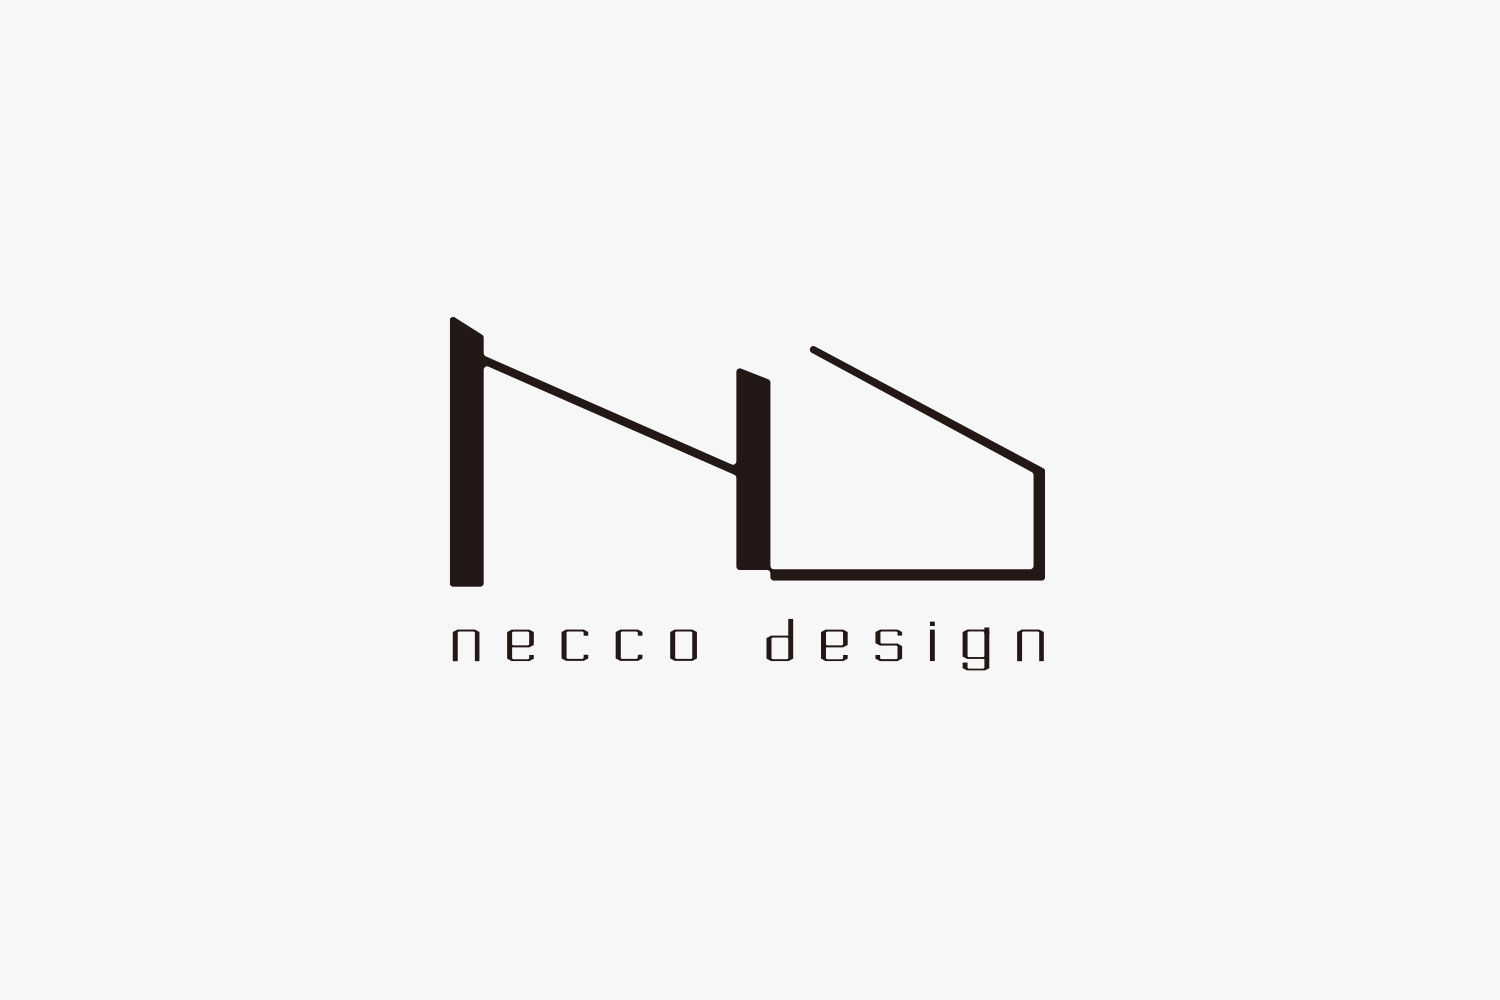 necco_design Logotype